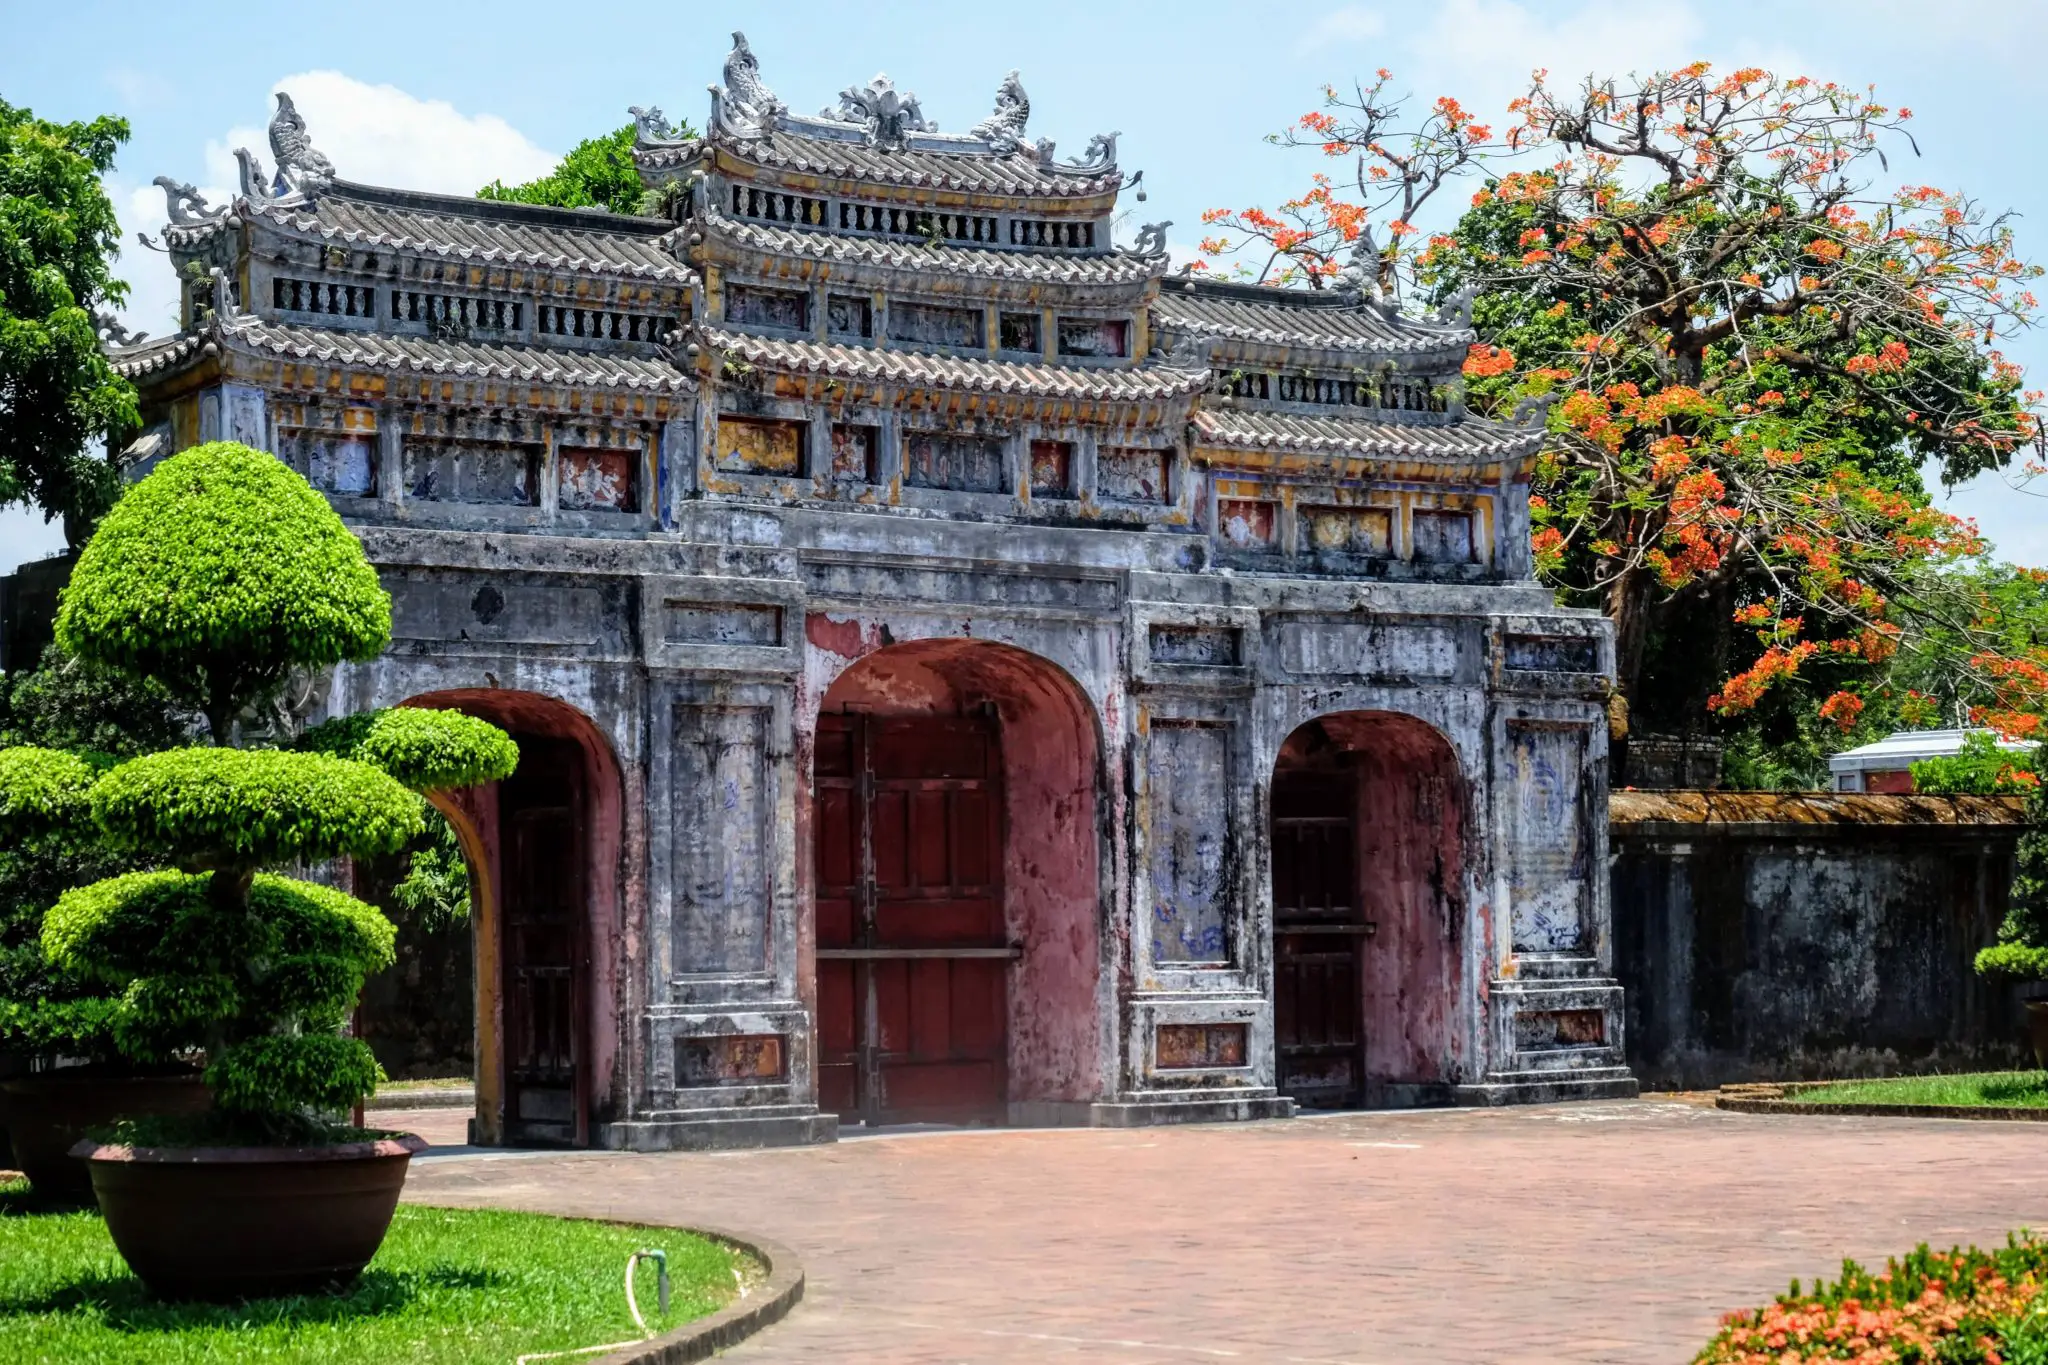 Imperial City, Hue, Vietnam